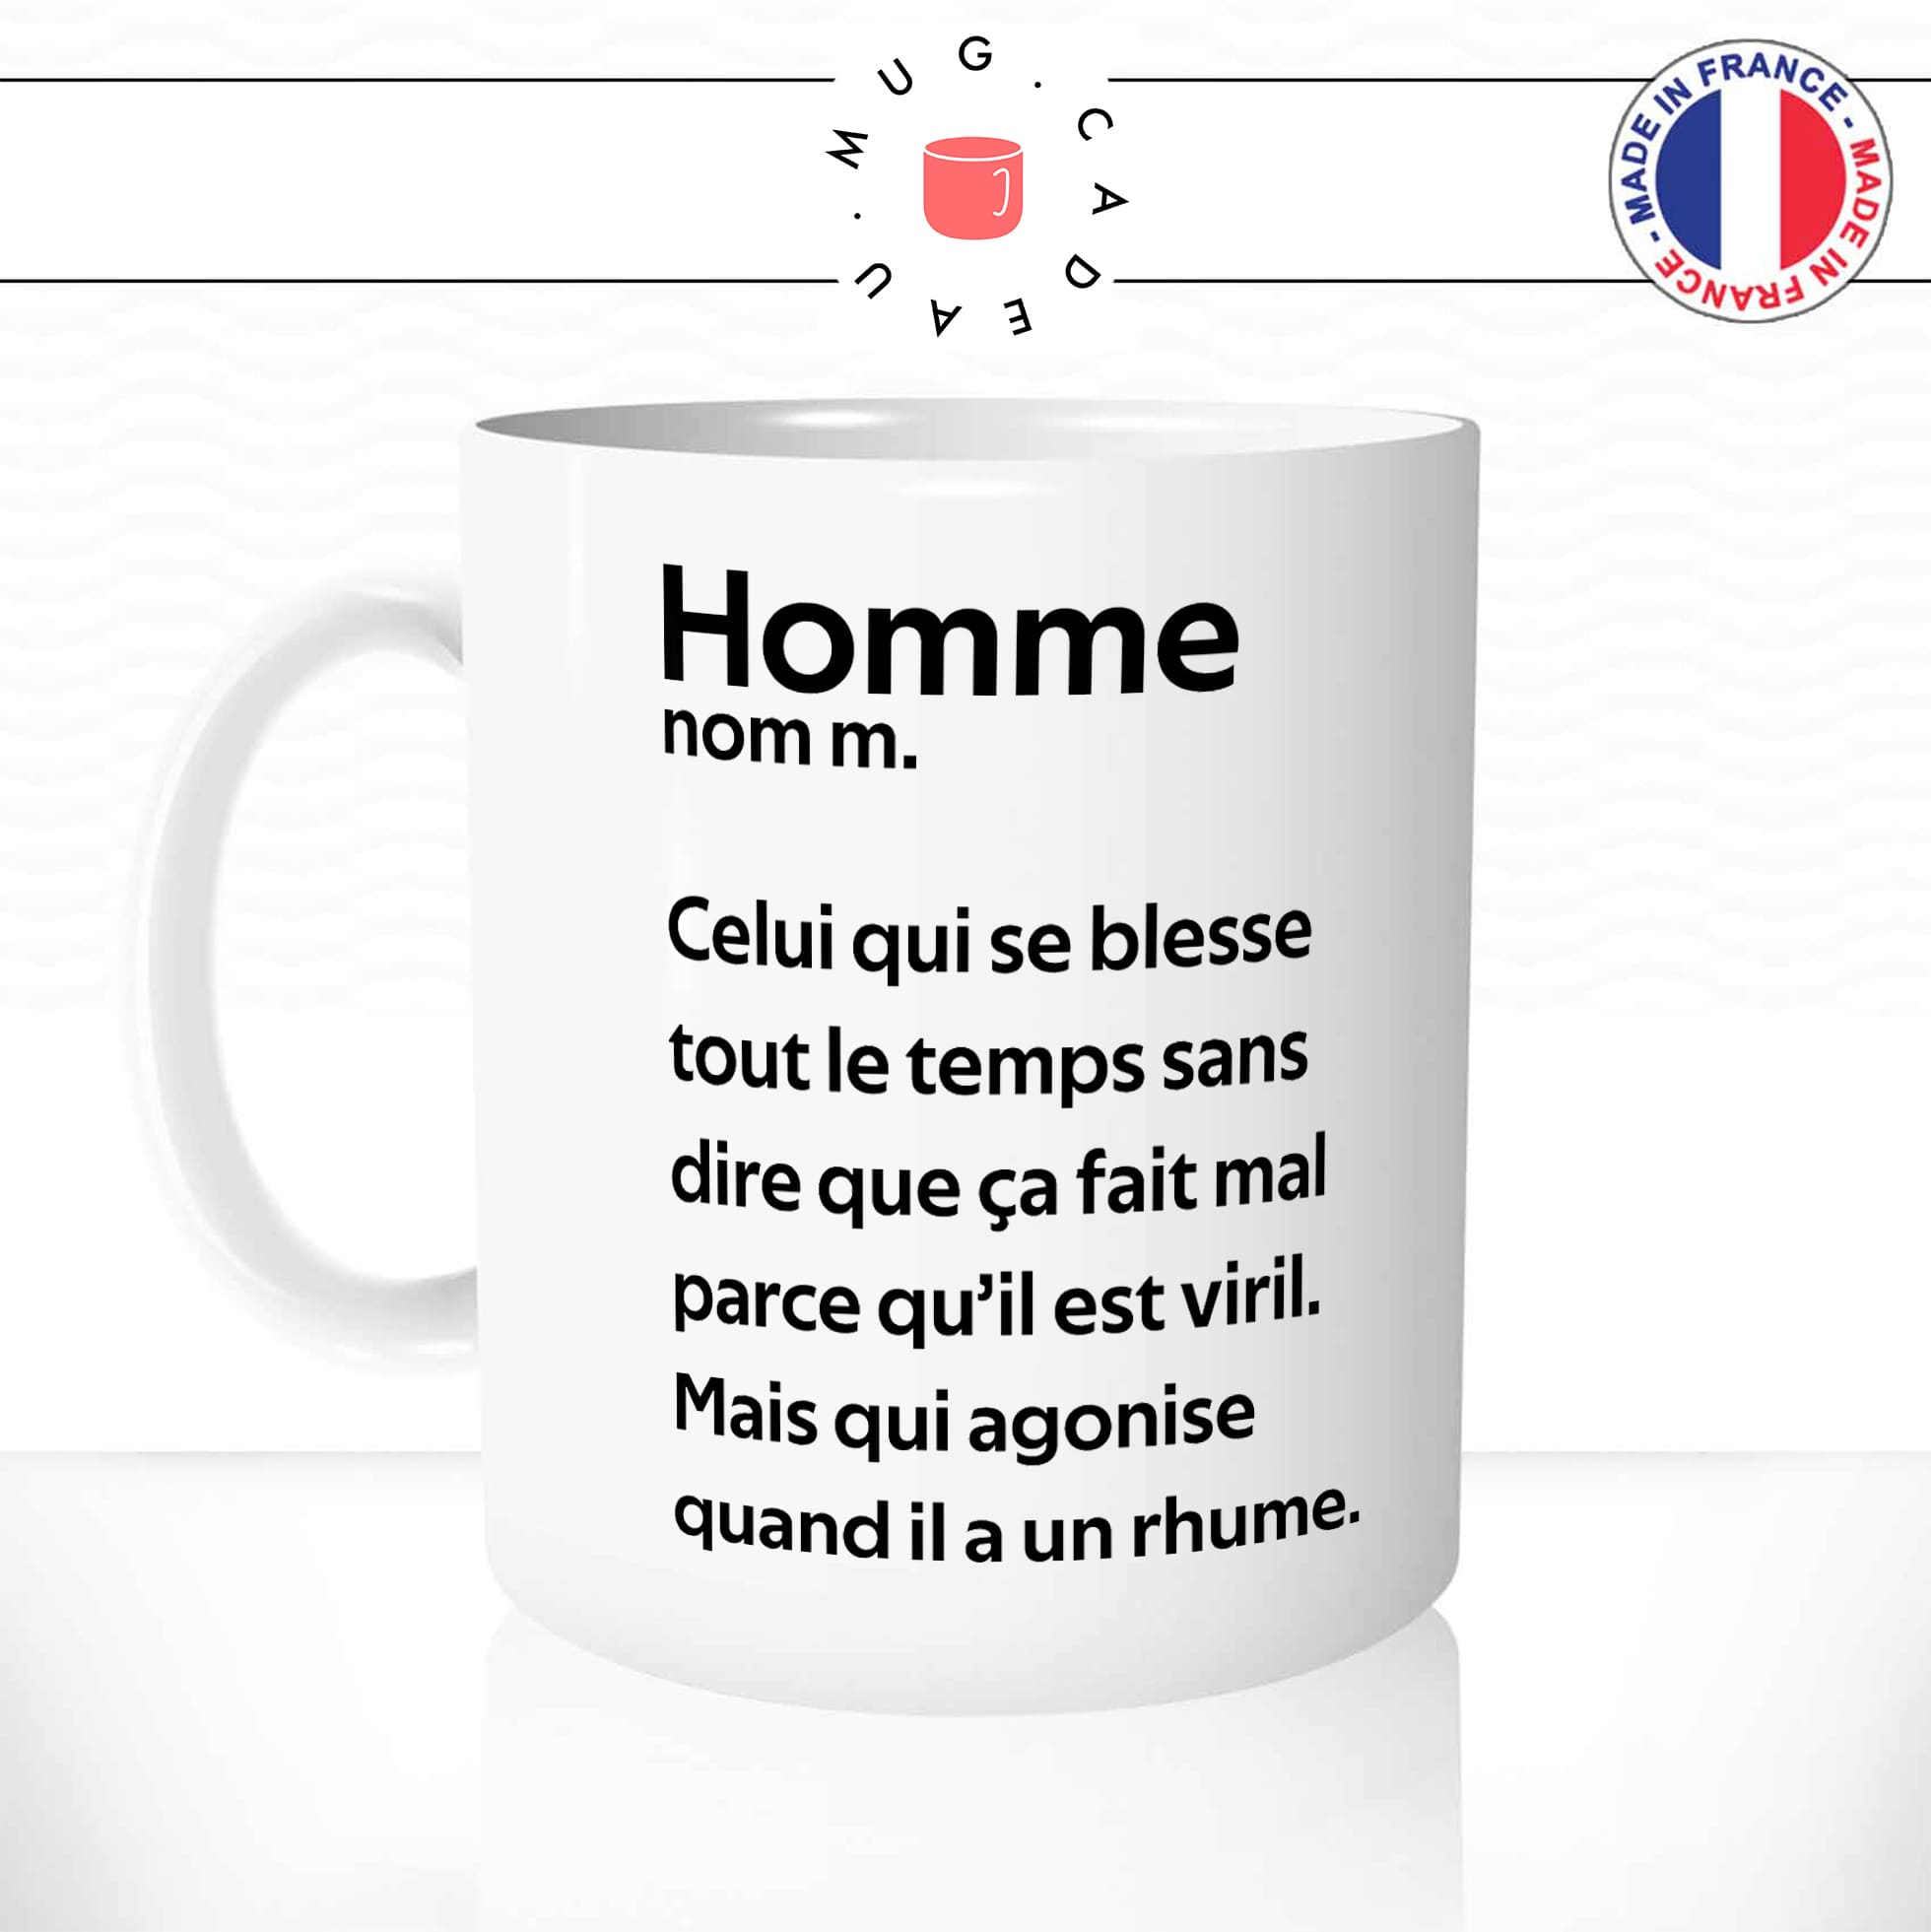 mug-tasse-blanc-homme-définition-agonise-pour-un-rhume-malade-défaut-couple-ménage-humour-fun-idée-cadeau-originale-cool